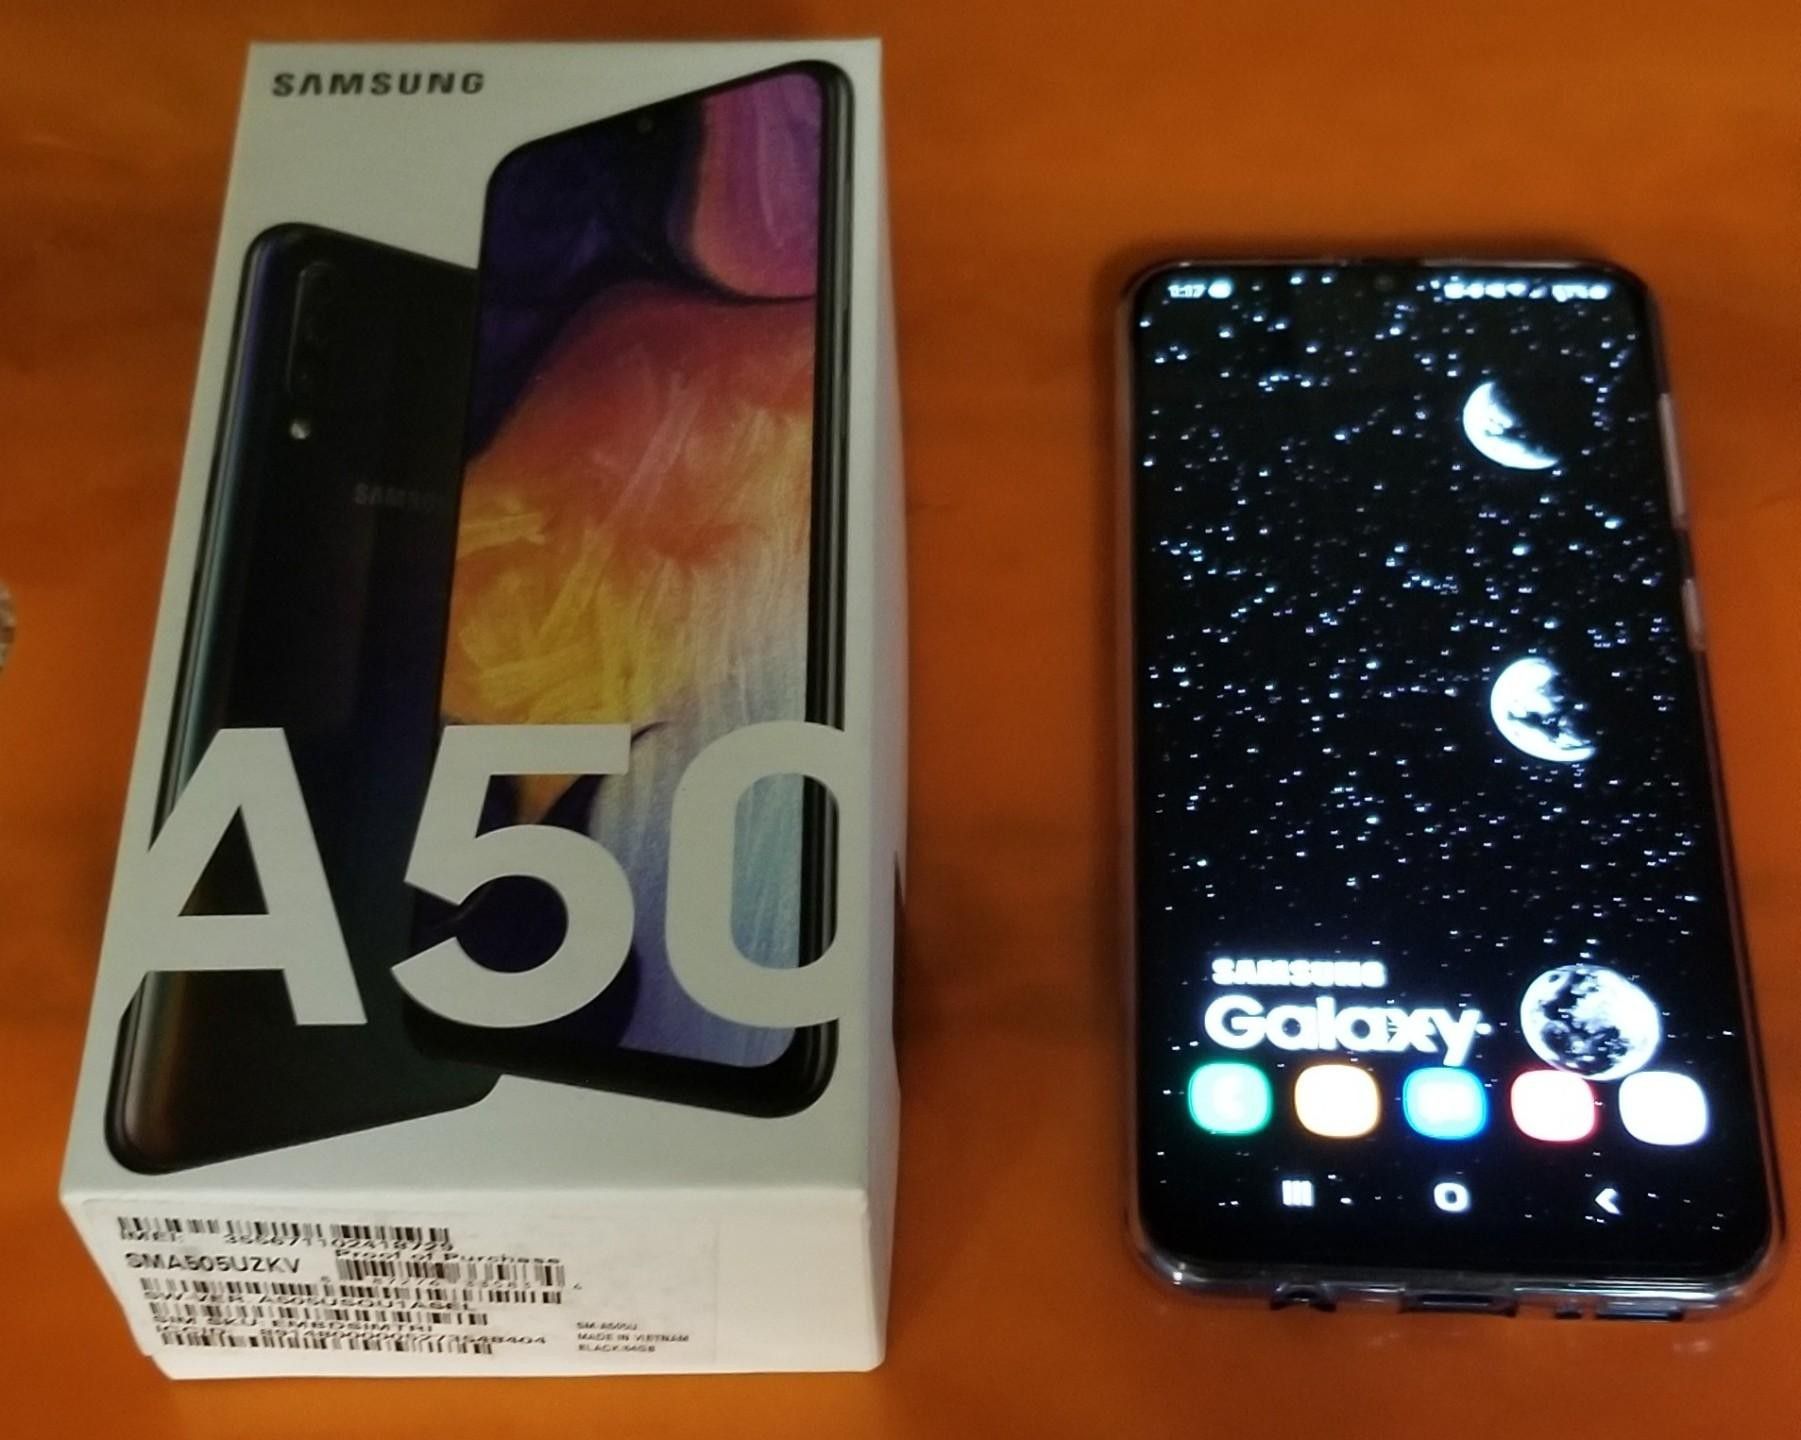 Samsung Galaxy a50.(unlocked).